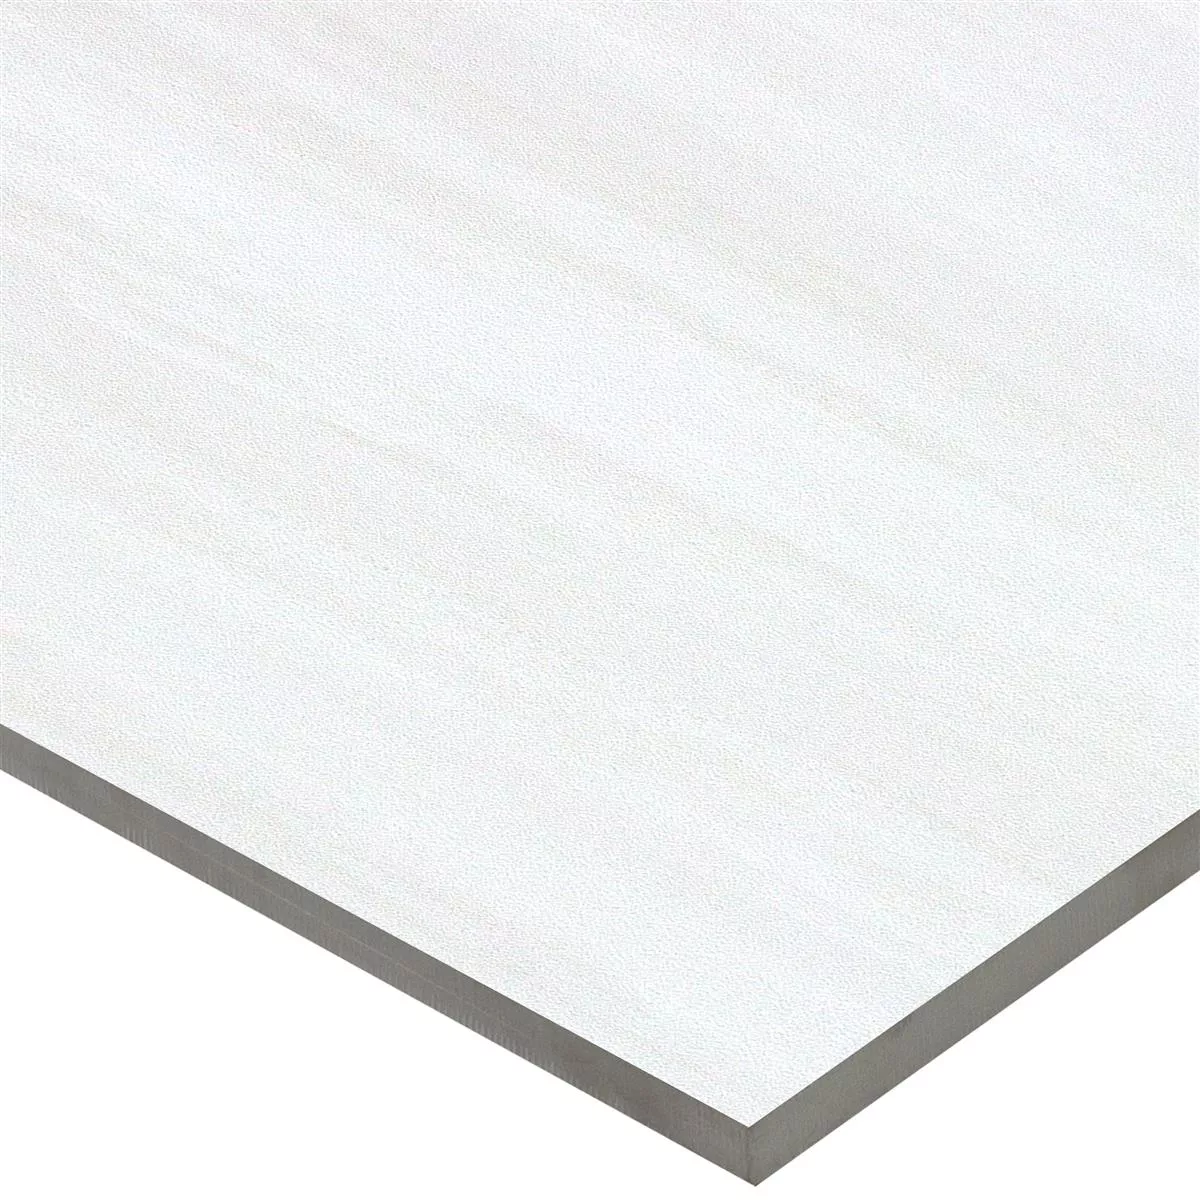 Sample Wall Tiles Tioga Mat Non Rectified Grey 30x60cm